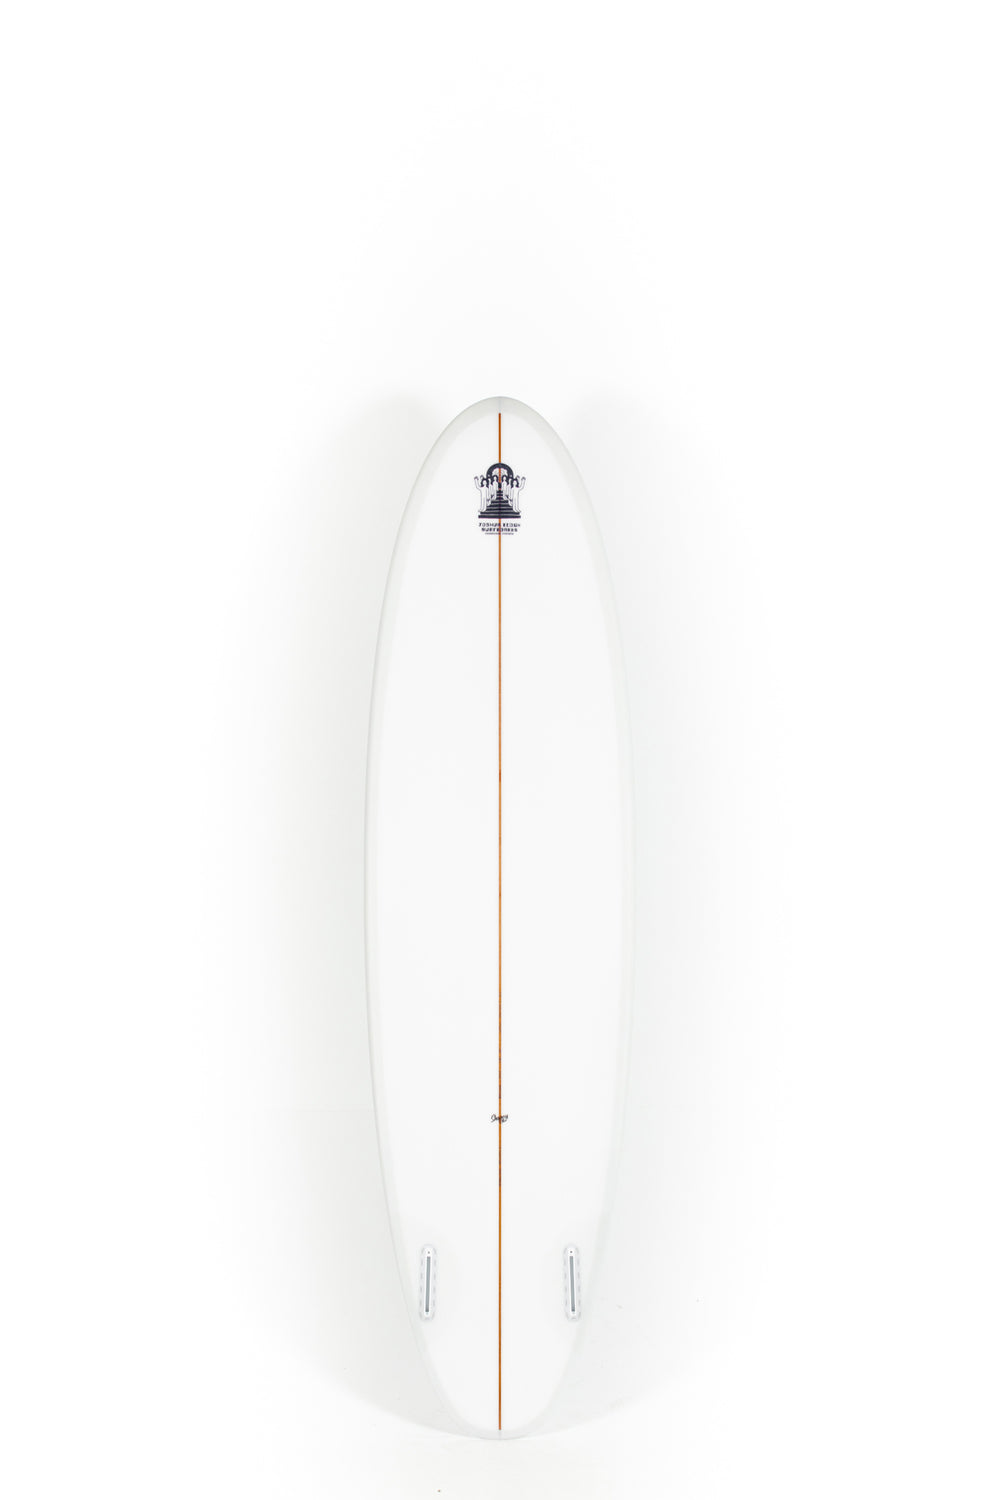 Joshua Keogh Surfboard - LIBERATOR TWIN 6'10